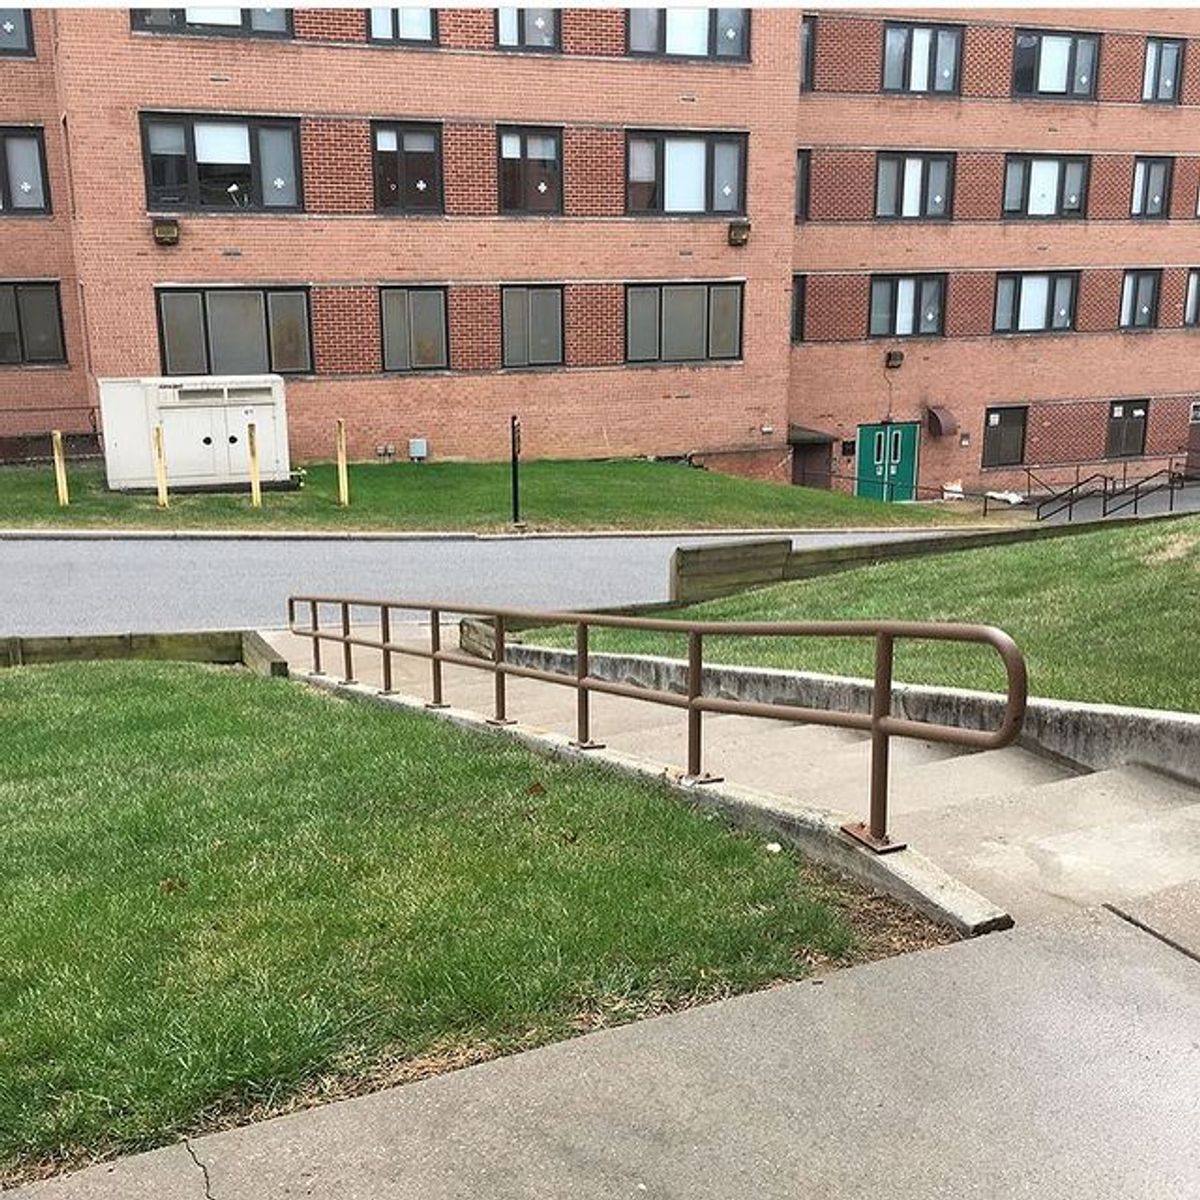 Image for skate spot WLOY - Long 14 Stair Rail